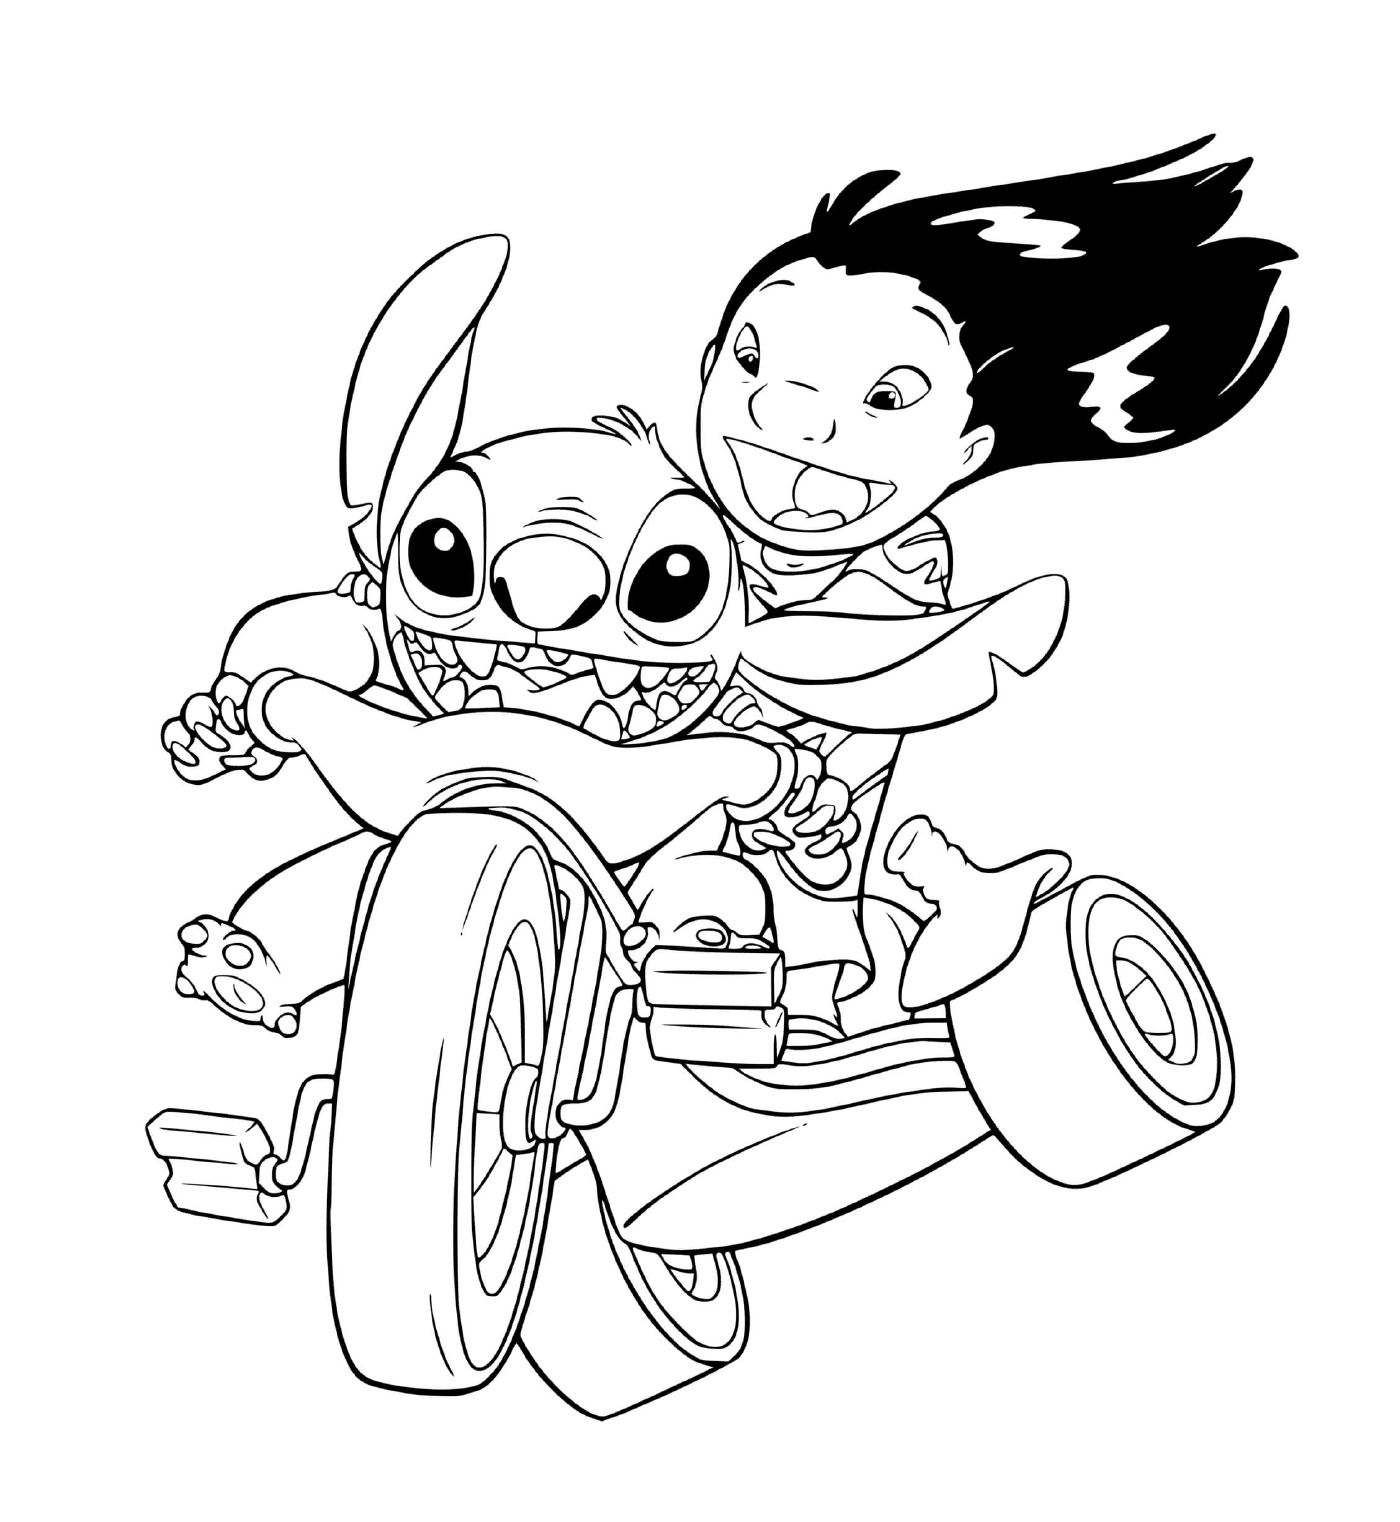  Stitch e Lilo amore velocità 